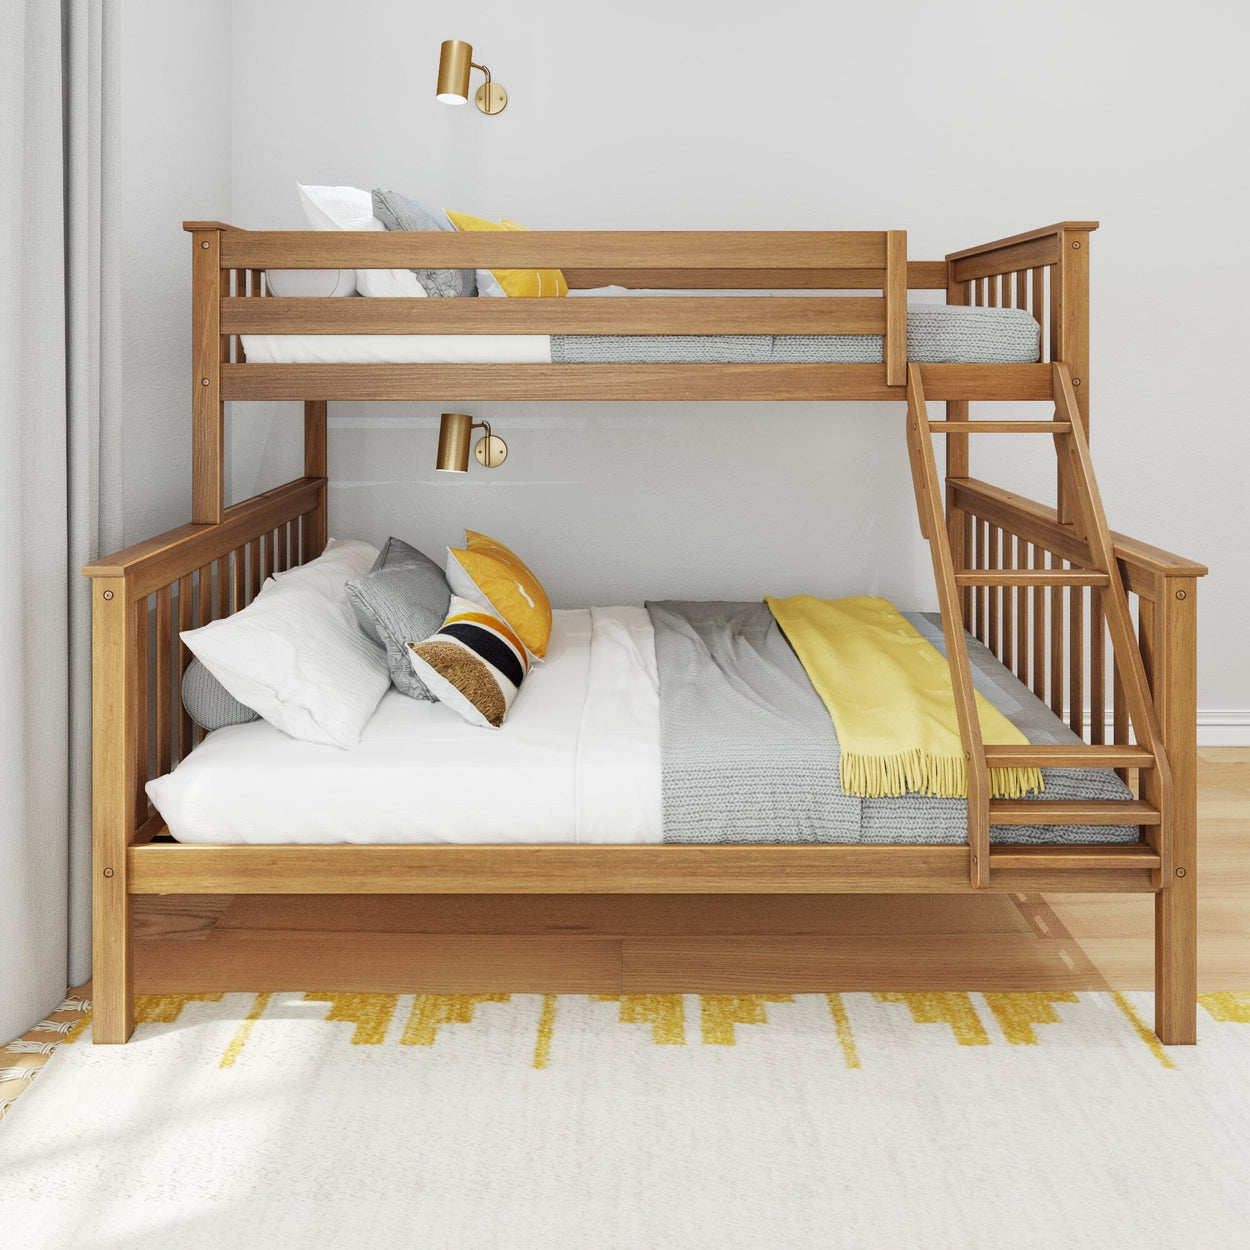 185331-007 : Bunk Beds Twin XL over Queen Bunk Bed, Pecan